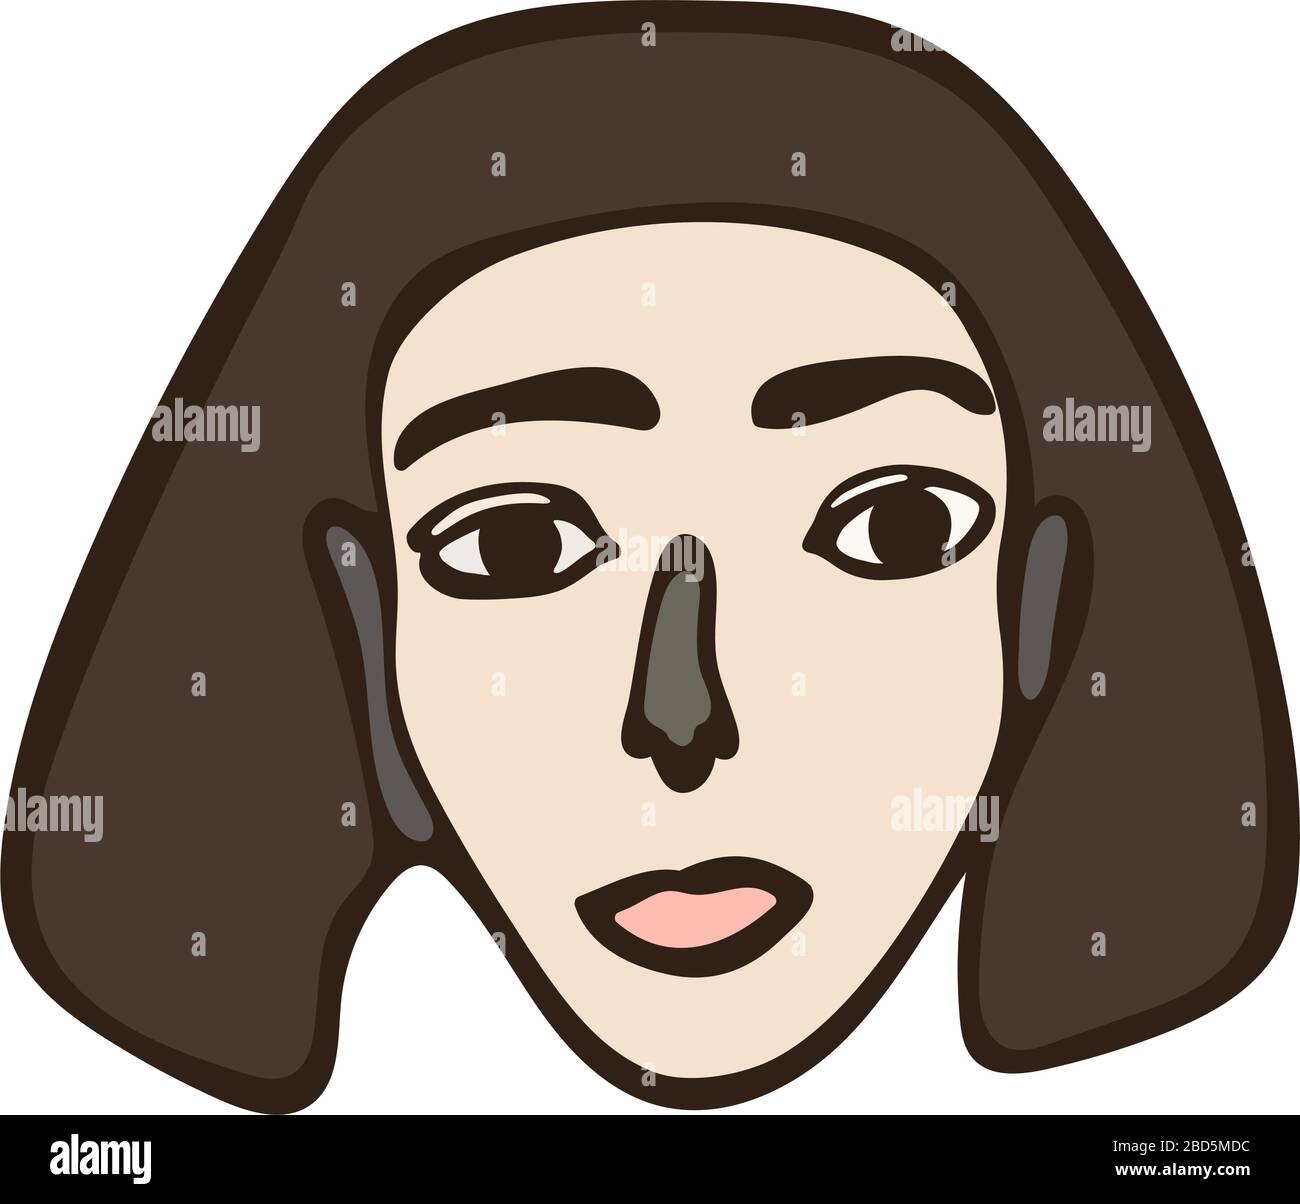 Ritratto femminile isolato lineare minimalista. Ragazza dai capelli castani, faccia bianca con occhi scuri. Caratteristiche facciali semplici. Grafica primitiva scandinava Illustrazione Vettoriale